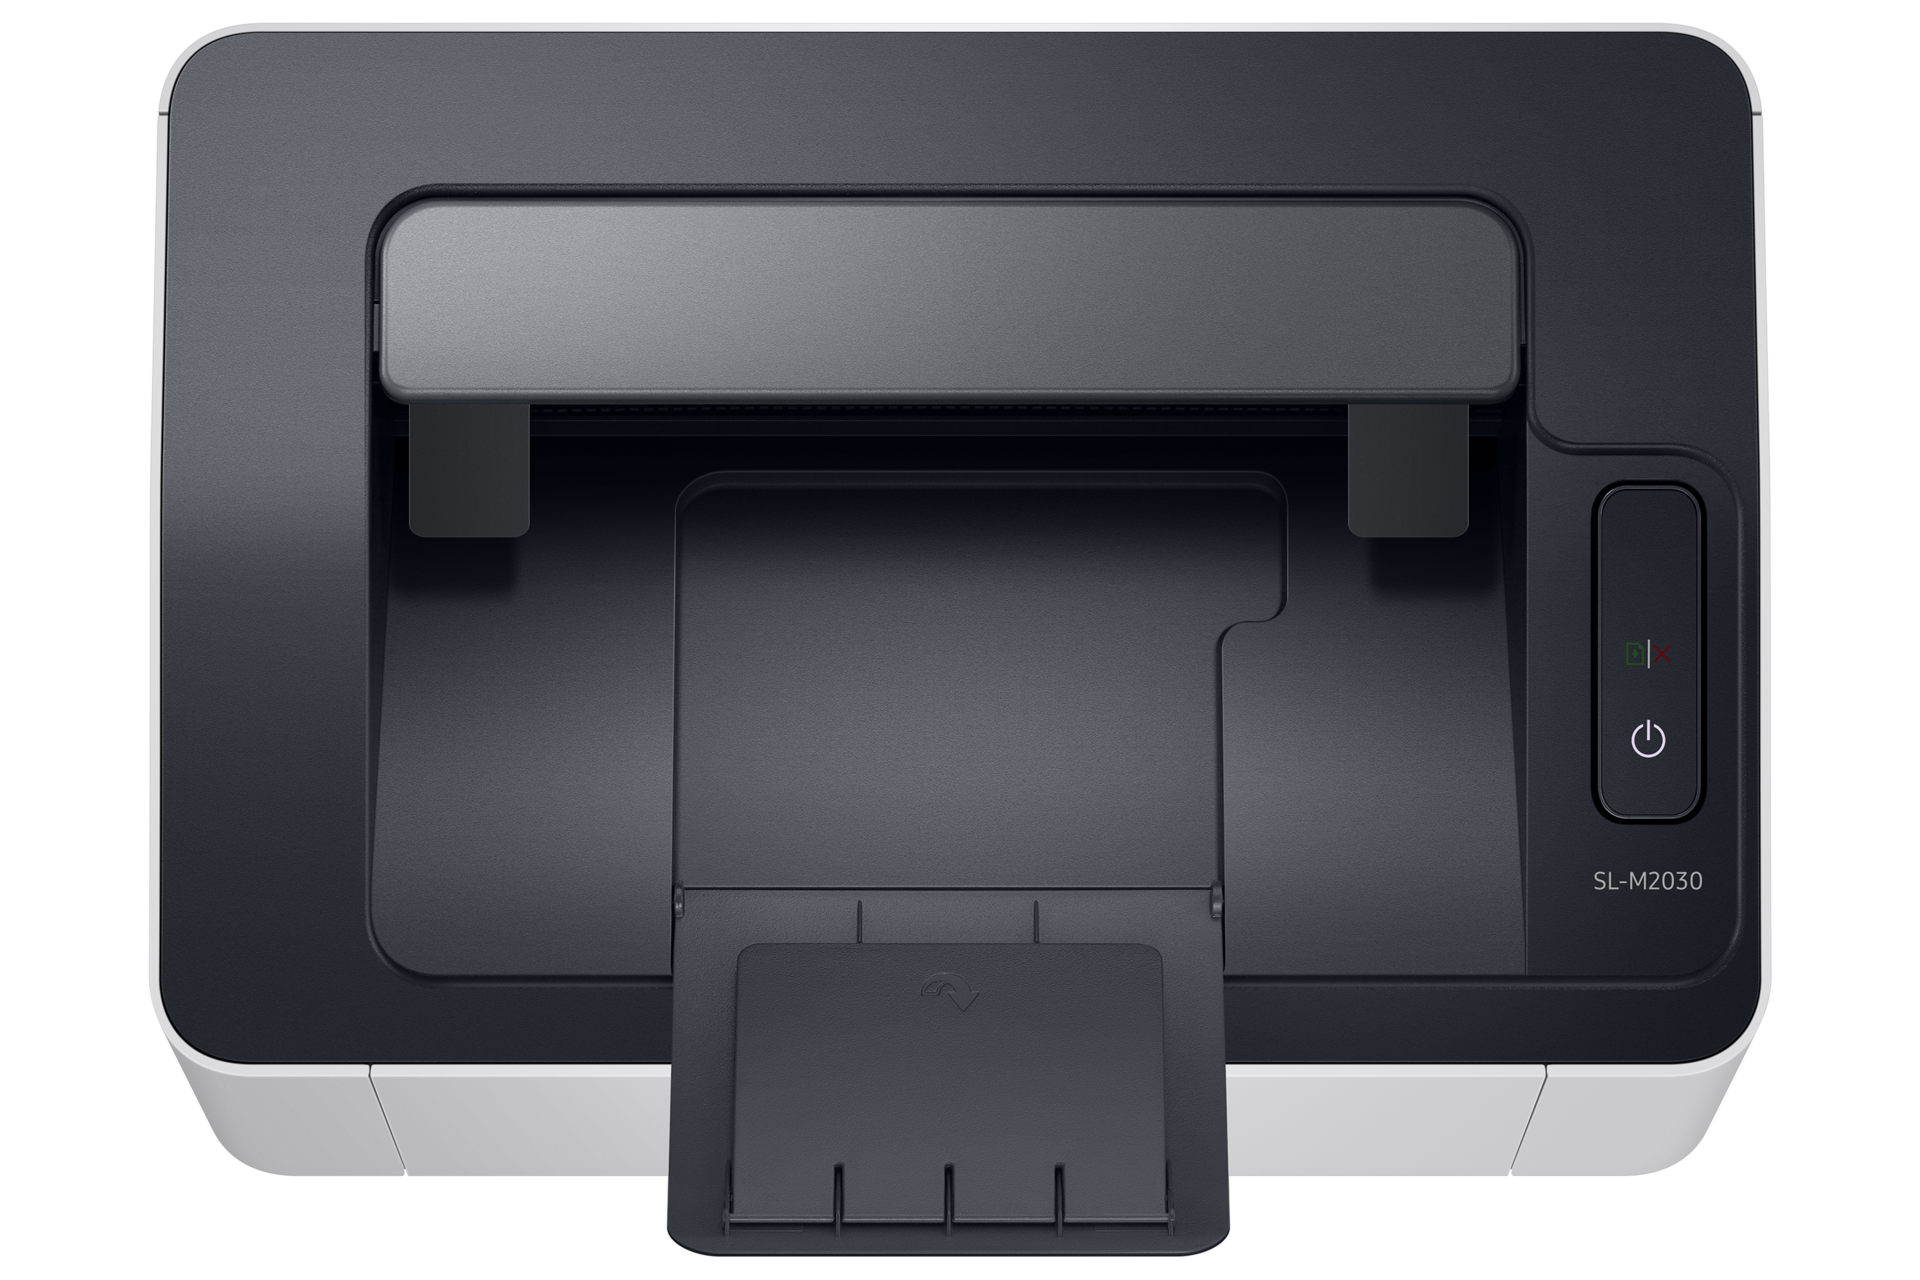 흑백 레이저 프린터 20 ppm 크림 화이트 윗면